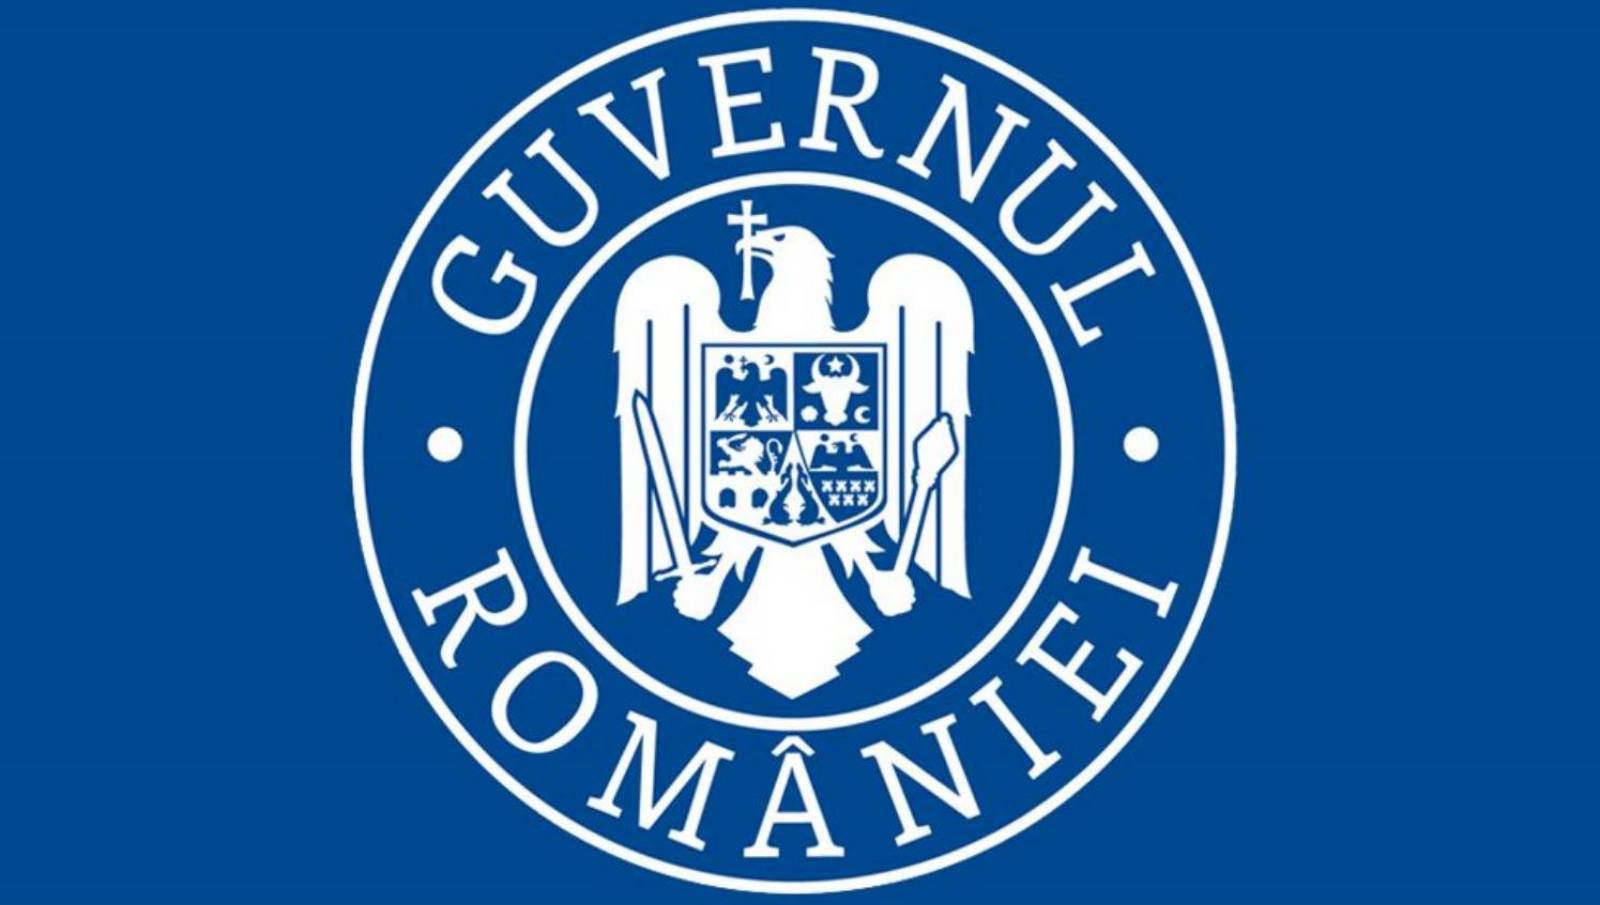 De Roemeense regering besloot in oktober